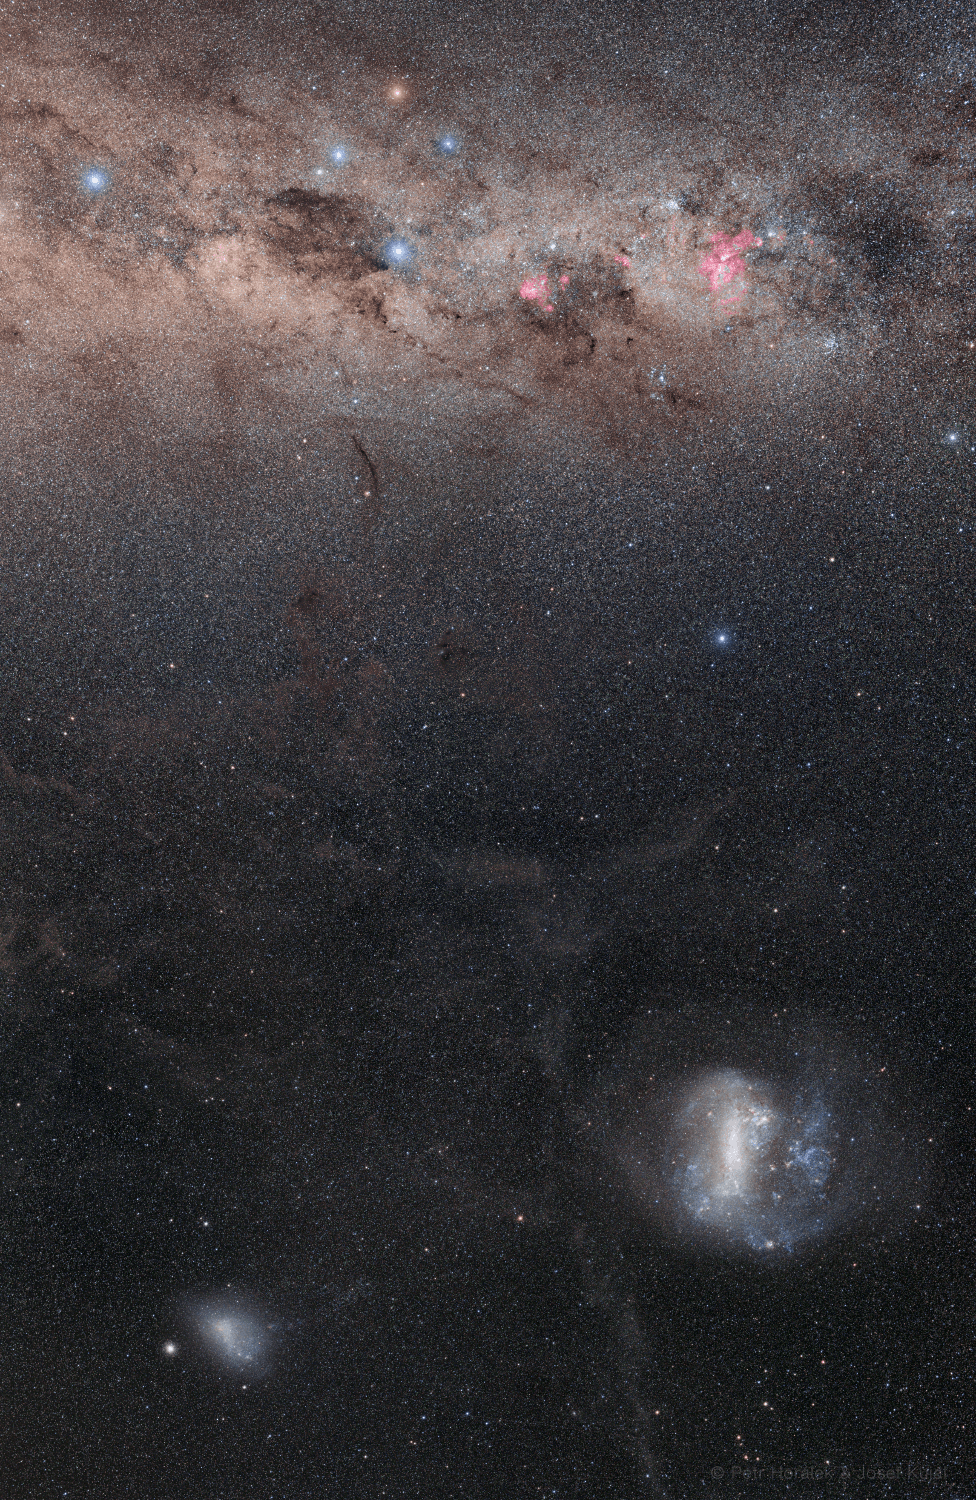 صورة ملأى بالنجوم تغطي حوالي 60 درجة من سماء نصف الكرة الجنوبي. في الجزء السفلي توجد غيوم ماجلان الكبيرة والصغيرة وعدد من المجرات سواء التابعة لدرب التبانة أو غيرها. تتواجد النجوم والسدم في الجزء العلوي من إطار الصورة على طول مستوي مجرتنا درب التبانة، حيث تظهر كوكبة صليب الجنوب أعلى الوسط تقريباً وفيها گاما الصليب النجم العملاق المصفر، ويظهر الامتداد الداكن لسديم كيس الفحم مندسّاً تحت ذراع الصليب على اليسار. يتوهج سديم القاعدة بلون أحمر بما فيه نجم إتا بالقرب من حافة الصورة اليمنى على امتداد المجرة كذلك.